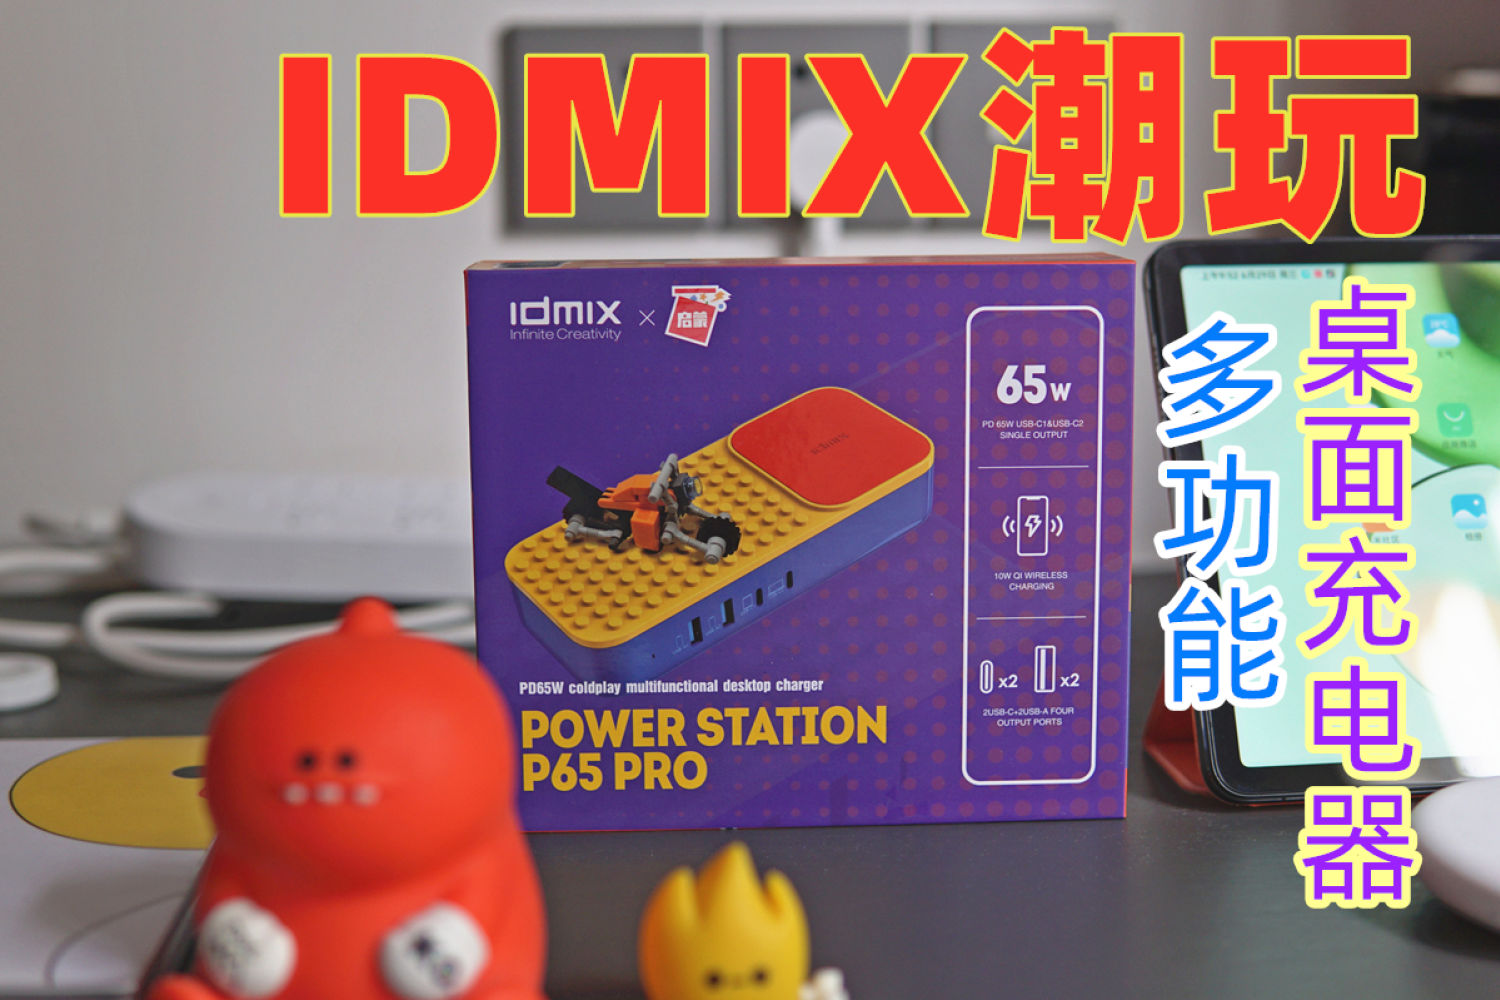 IDMIX联名潮玩充电，它是充电器又是积木摆件